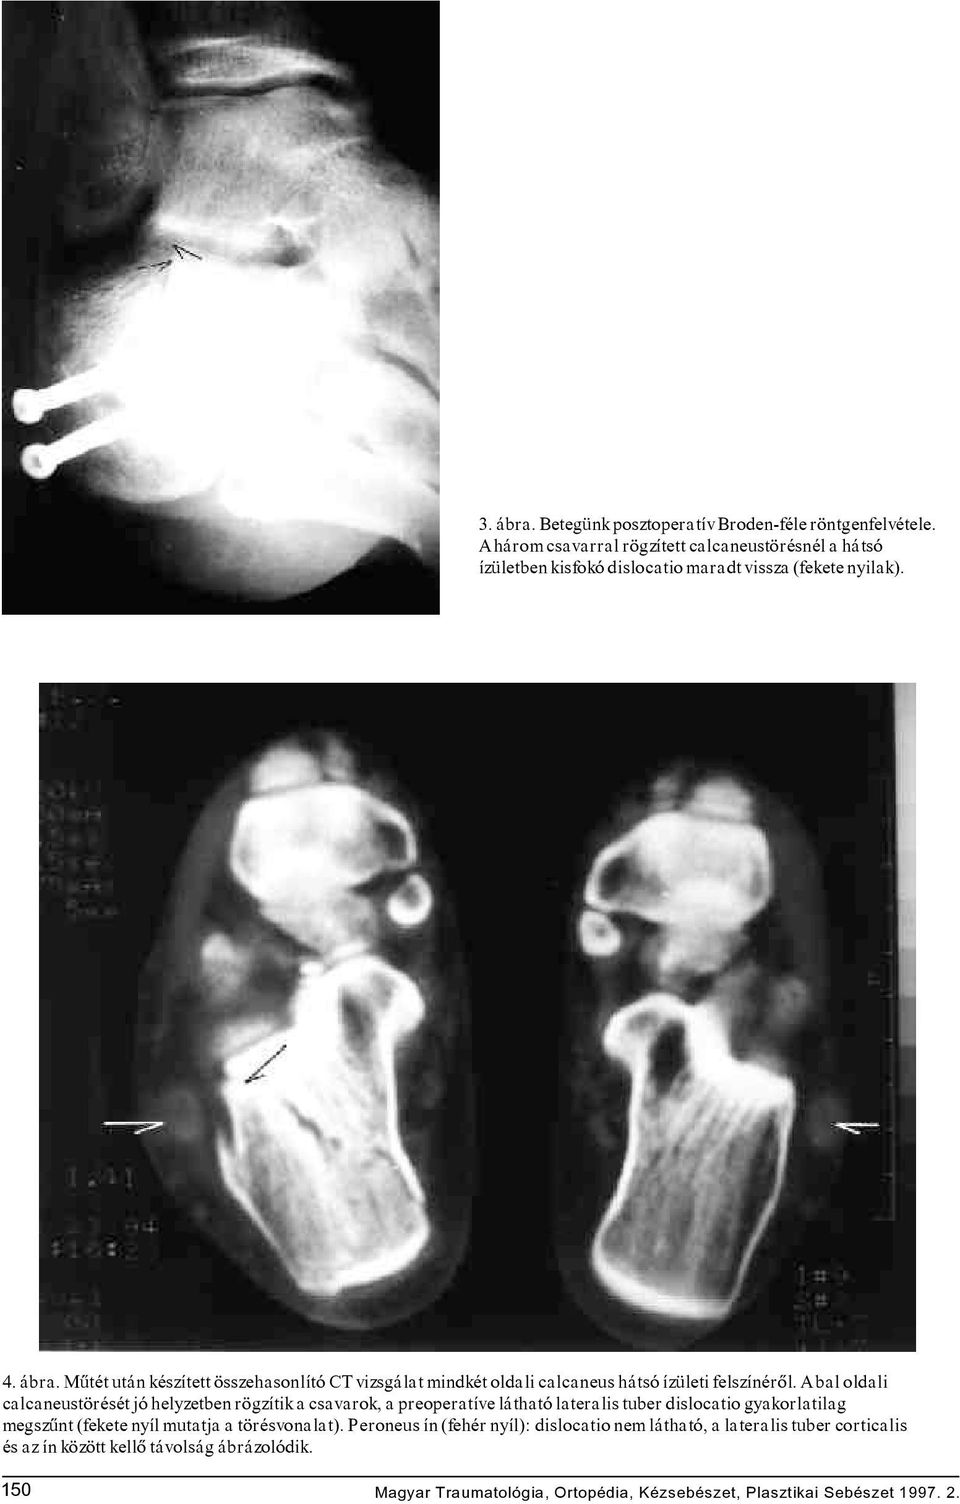 Mûtét után készített összehasonlító CT vizsgálat mindkét oldali calcaneus hátsó ízületi felszínérôl.